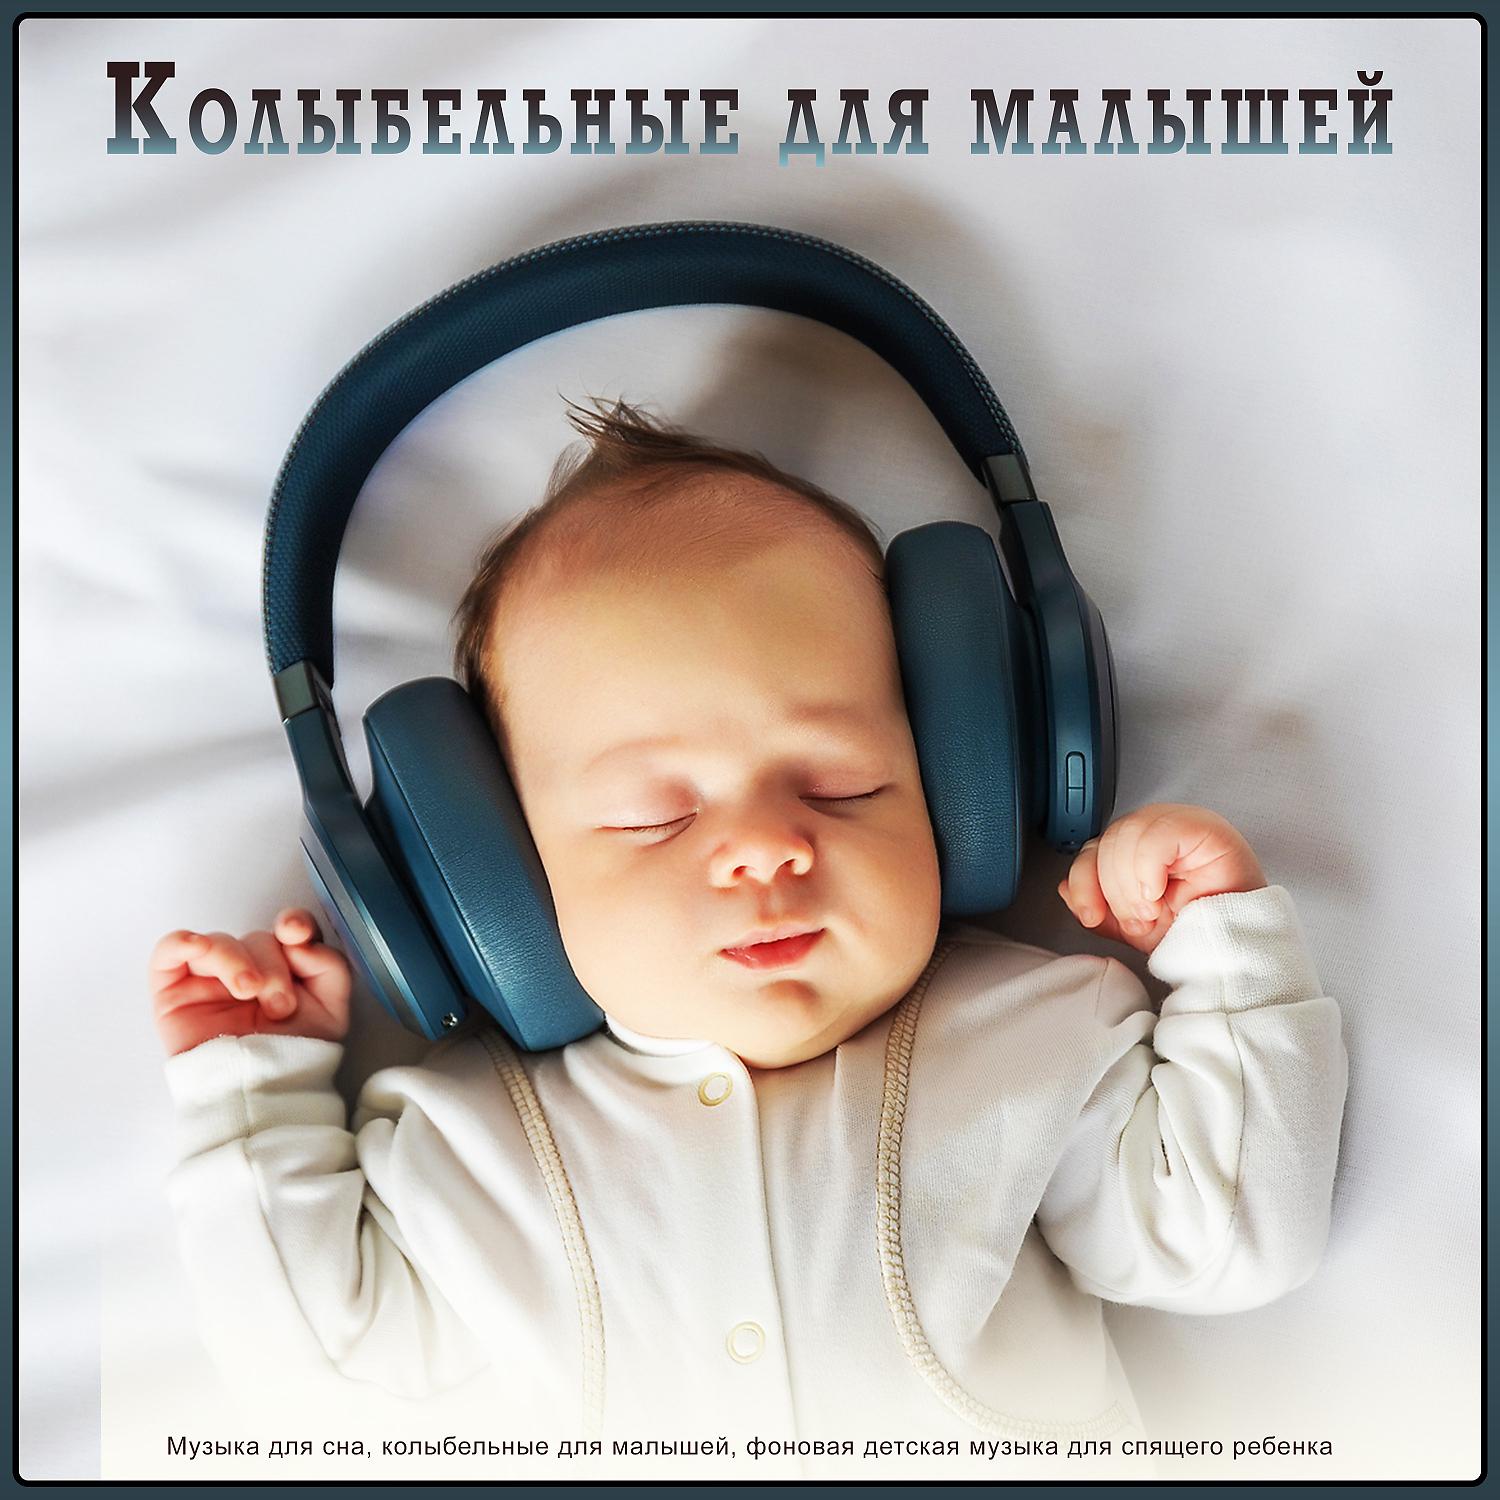 Музыка для малышей видео. Музыка для сна младенца. Музыка для сна для малышей. Мелодии для засыпания малышей. Колыбельная для малышей успокаивающая.